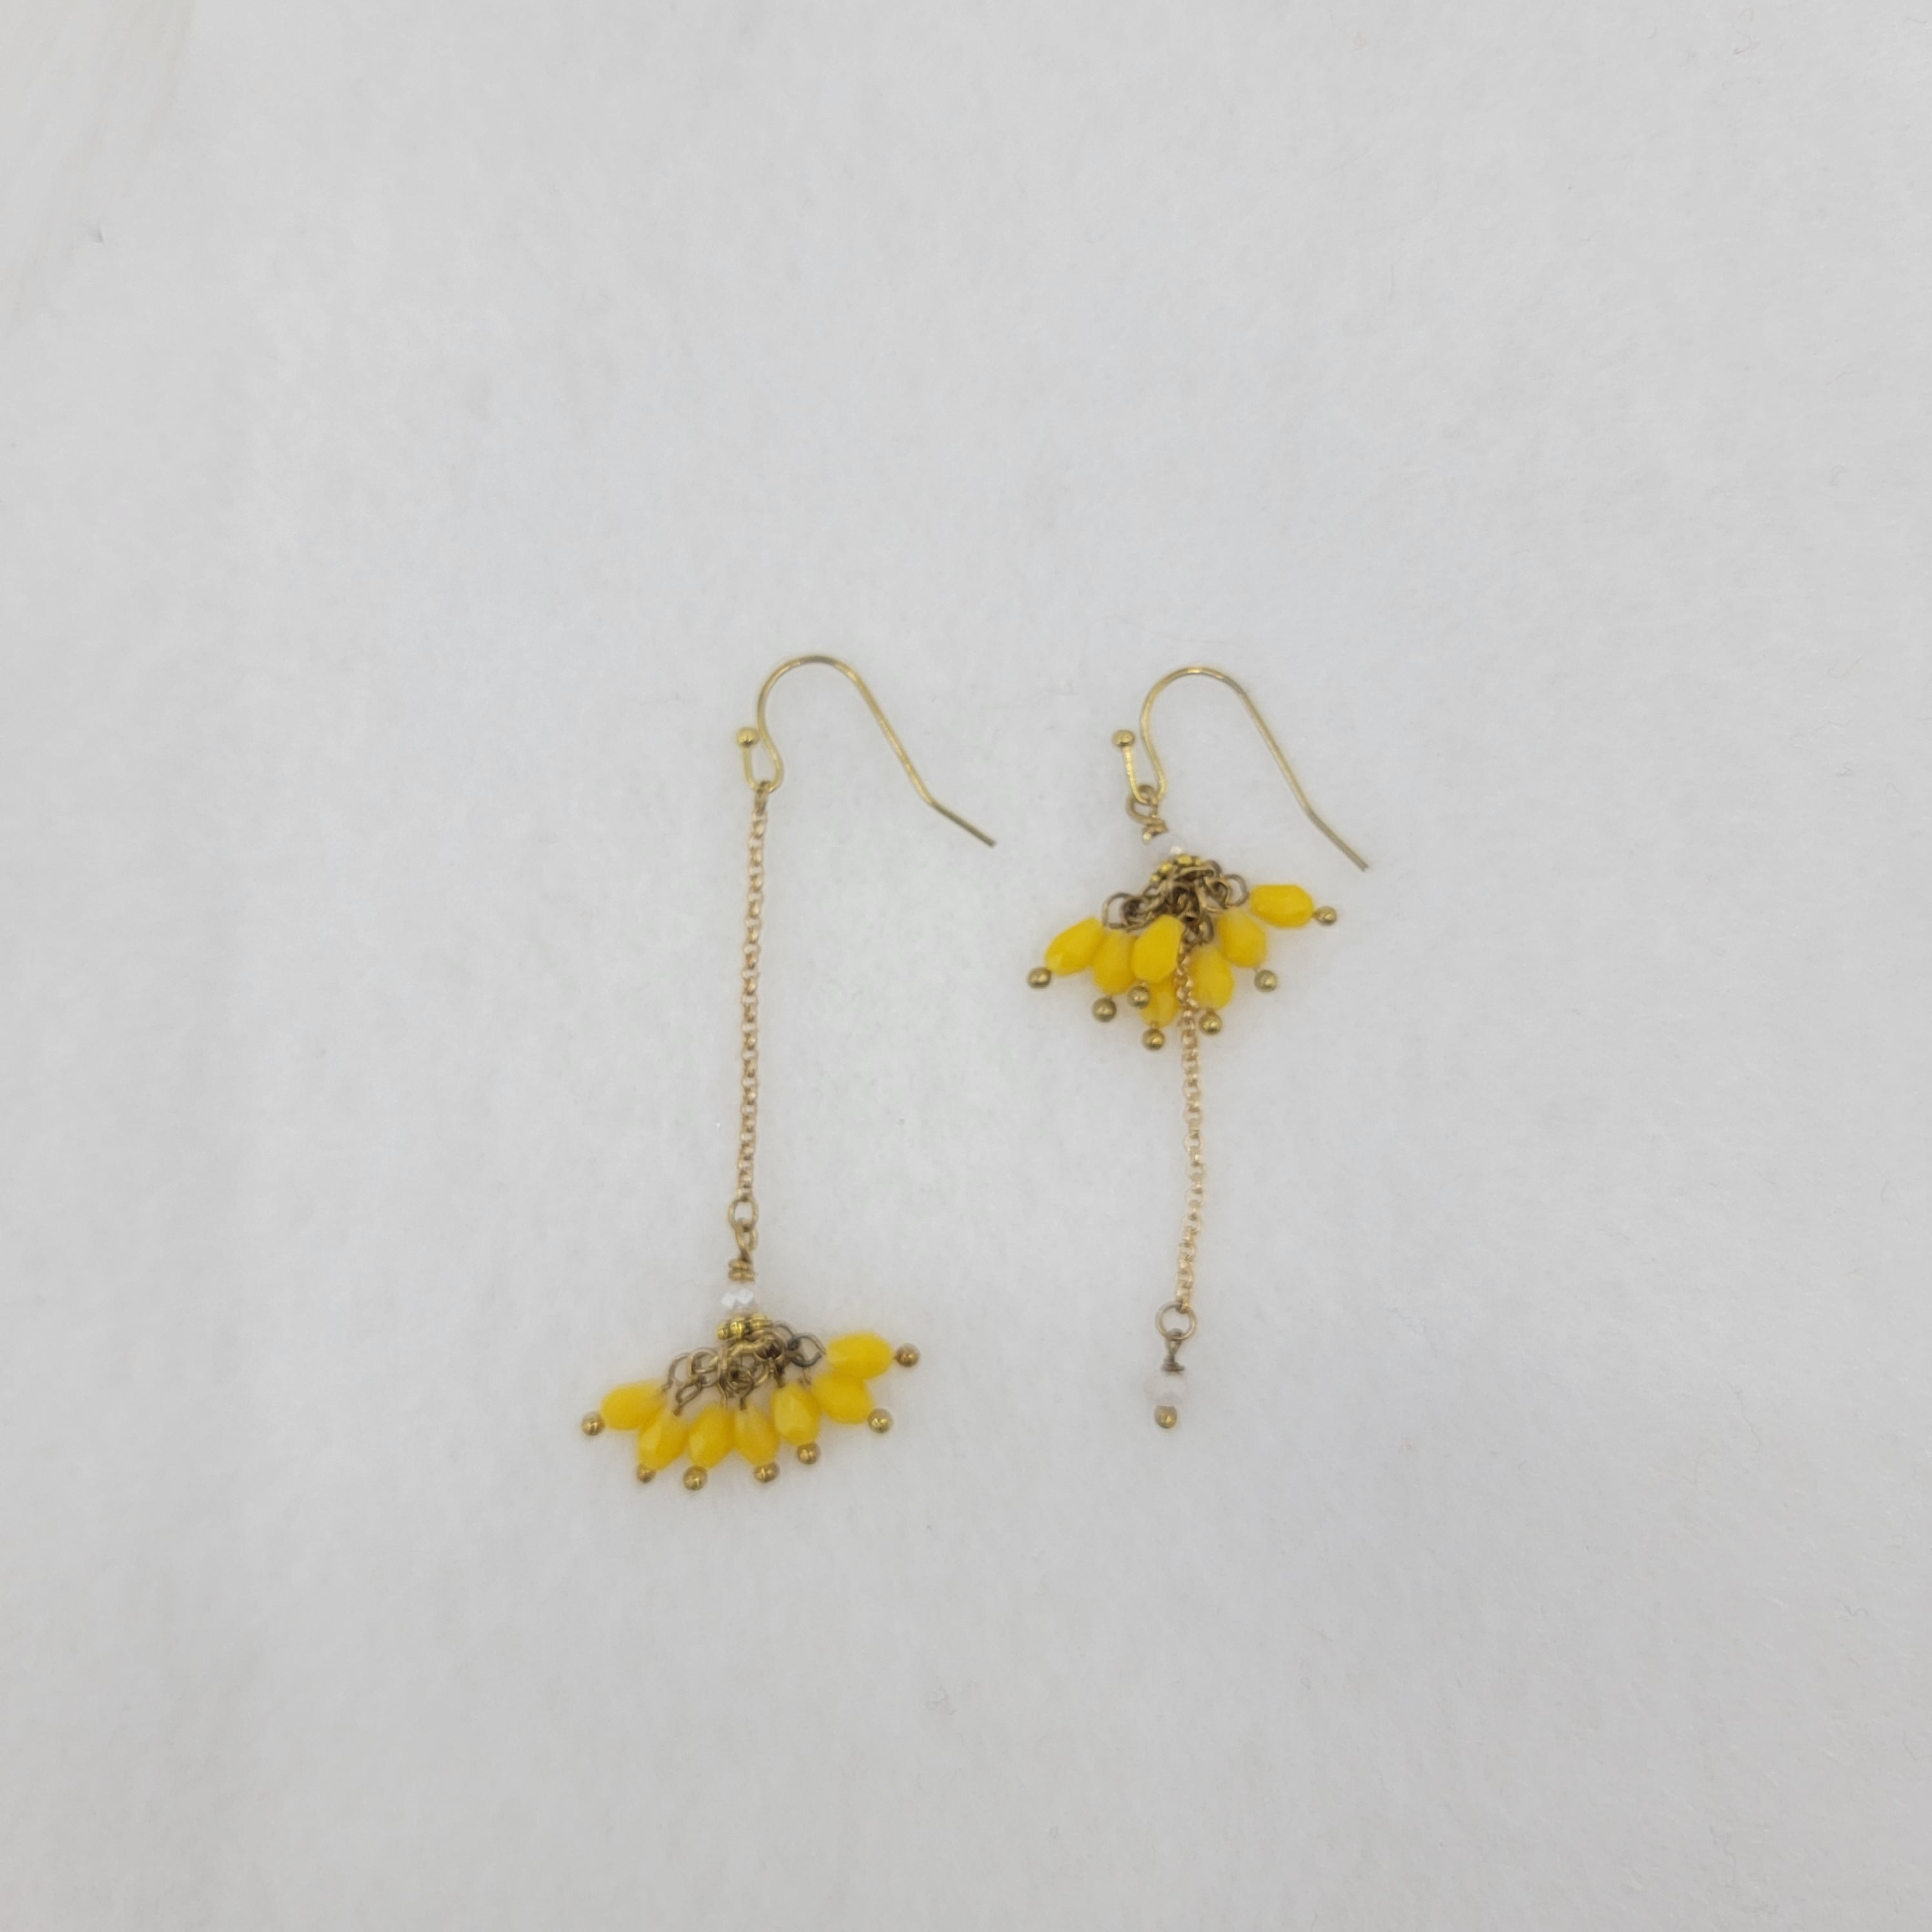 Flower Crystal Drop Dangle Earrings